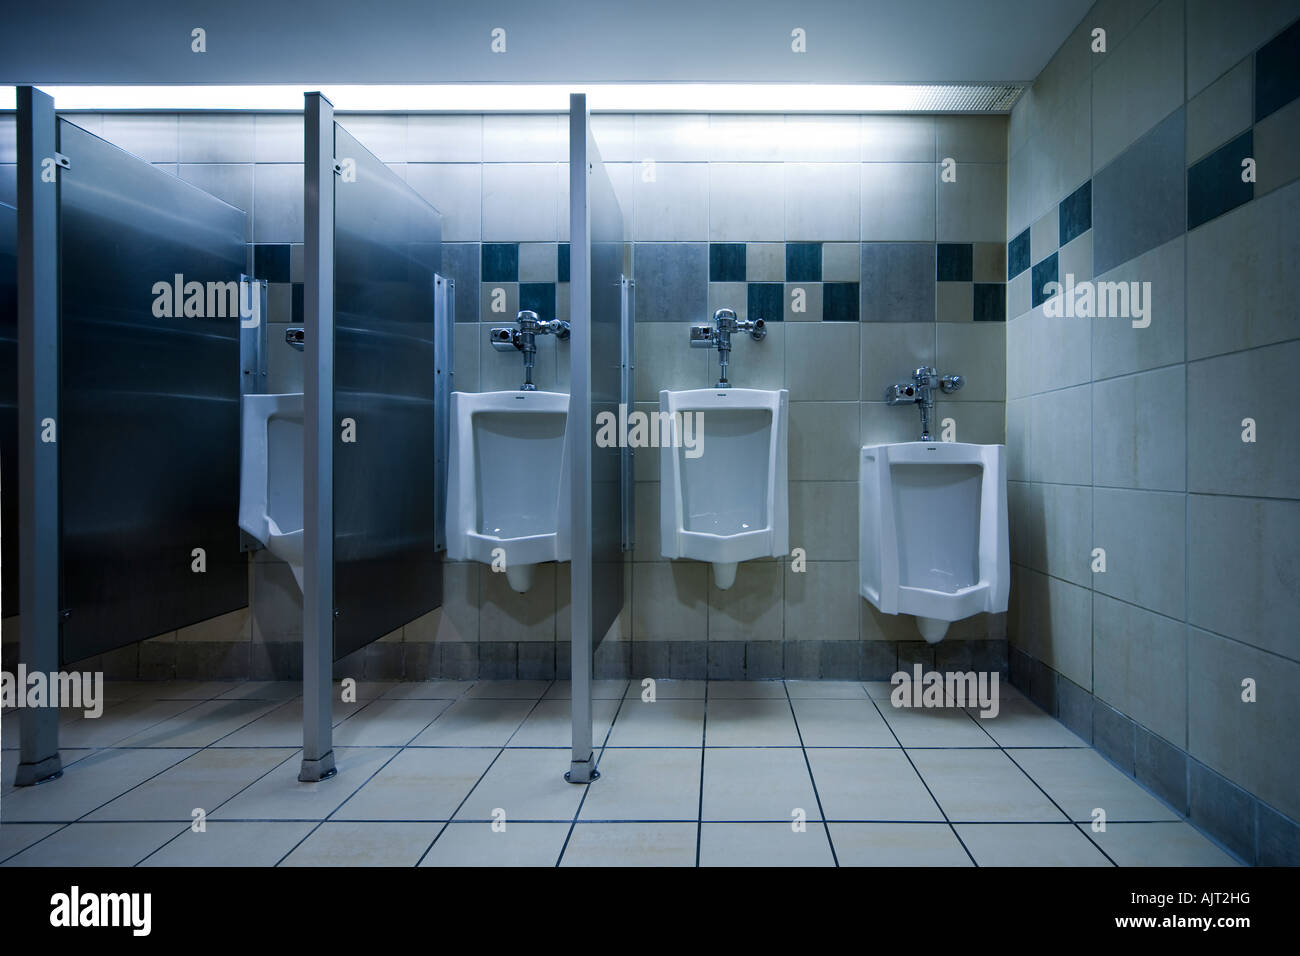 Öffentliche Toilette. Typische amerikanische Herrentoilette Urinale  Stockfotografie - Alamy